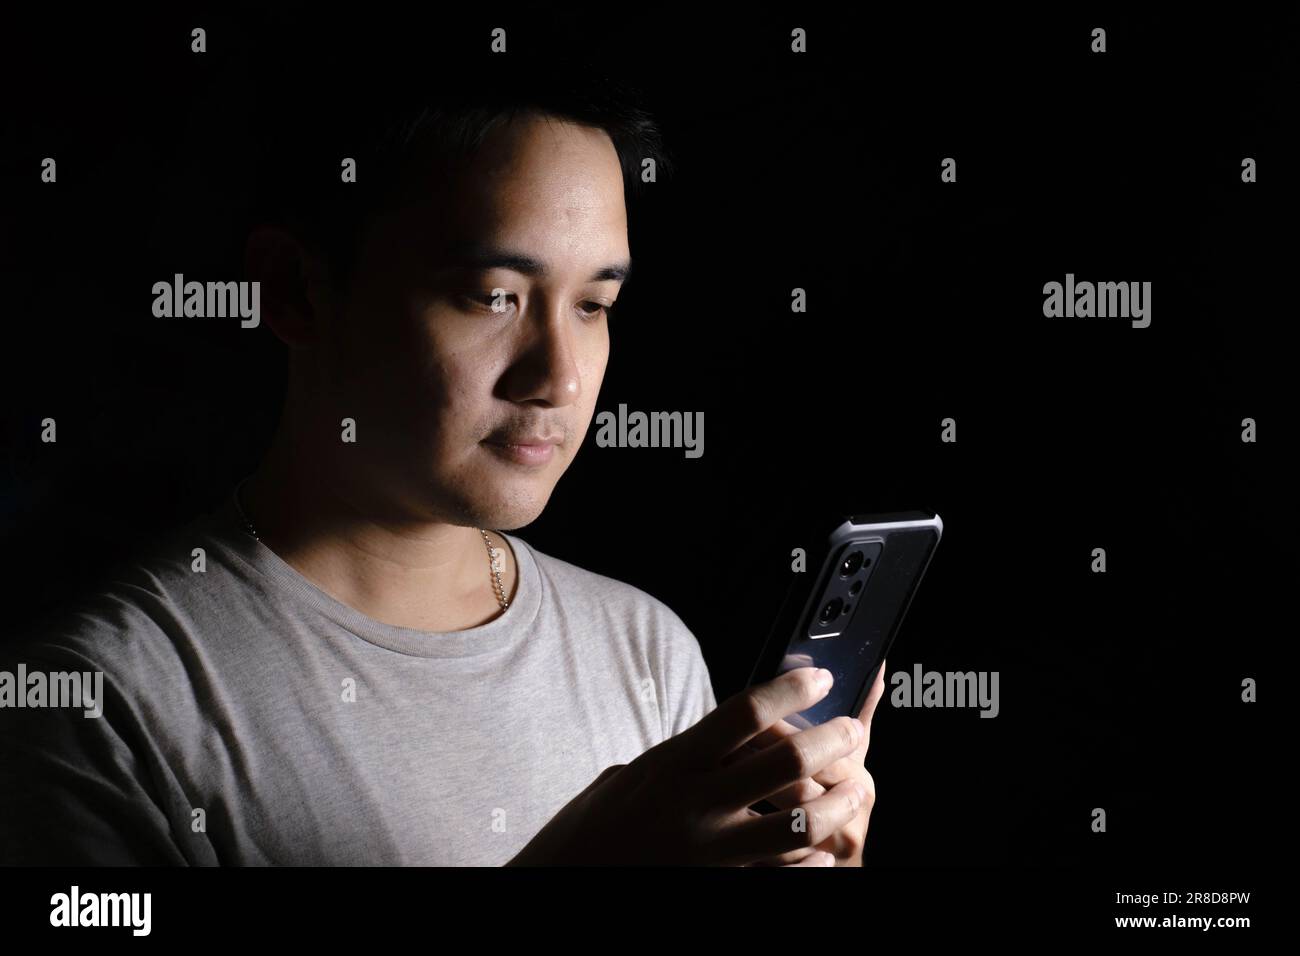 Unauffällige Aufnahme eines jungen Asiaten, der ein graues T-Shirt trägt und auf ein Smartphone schaut. Isolierter schwarzer Hintergrund. Dramatisch. Stockfoto